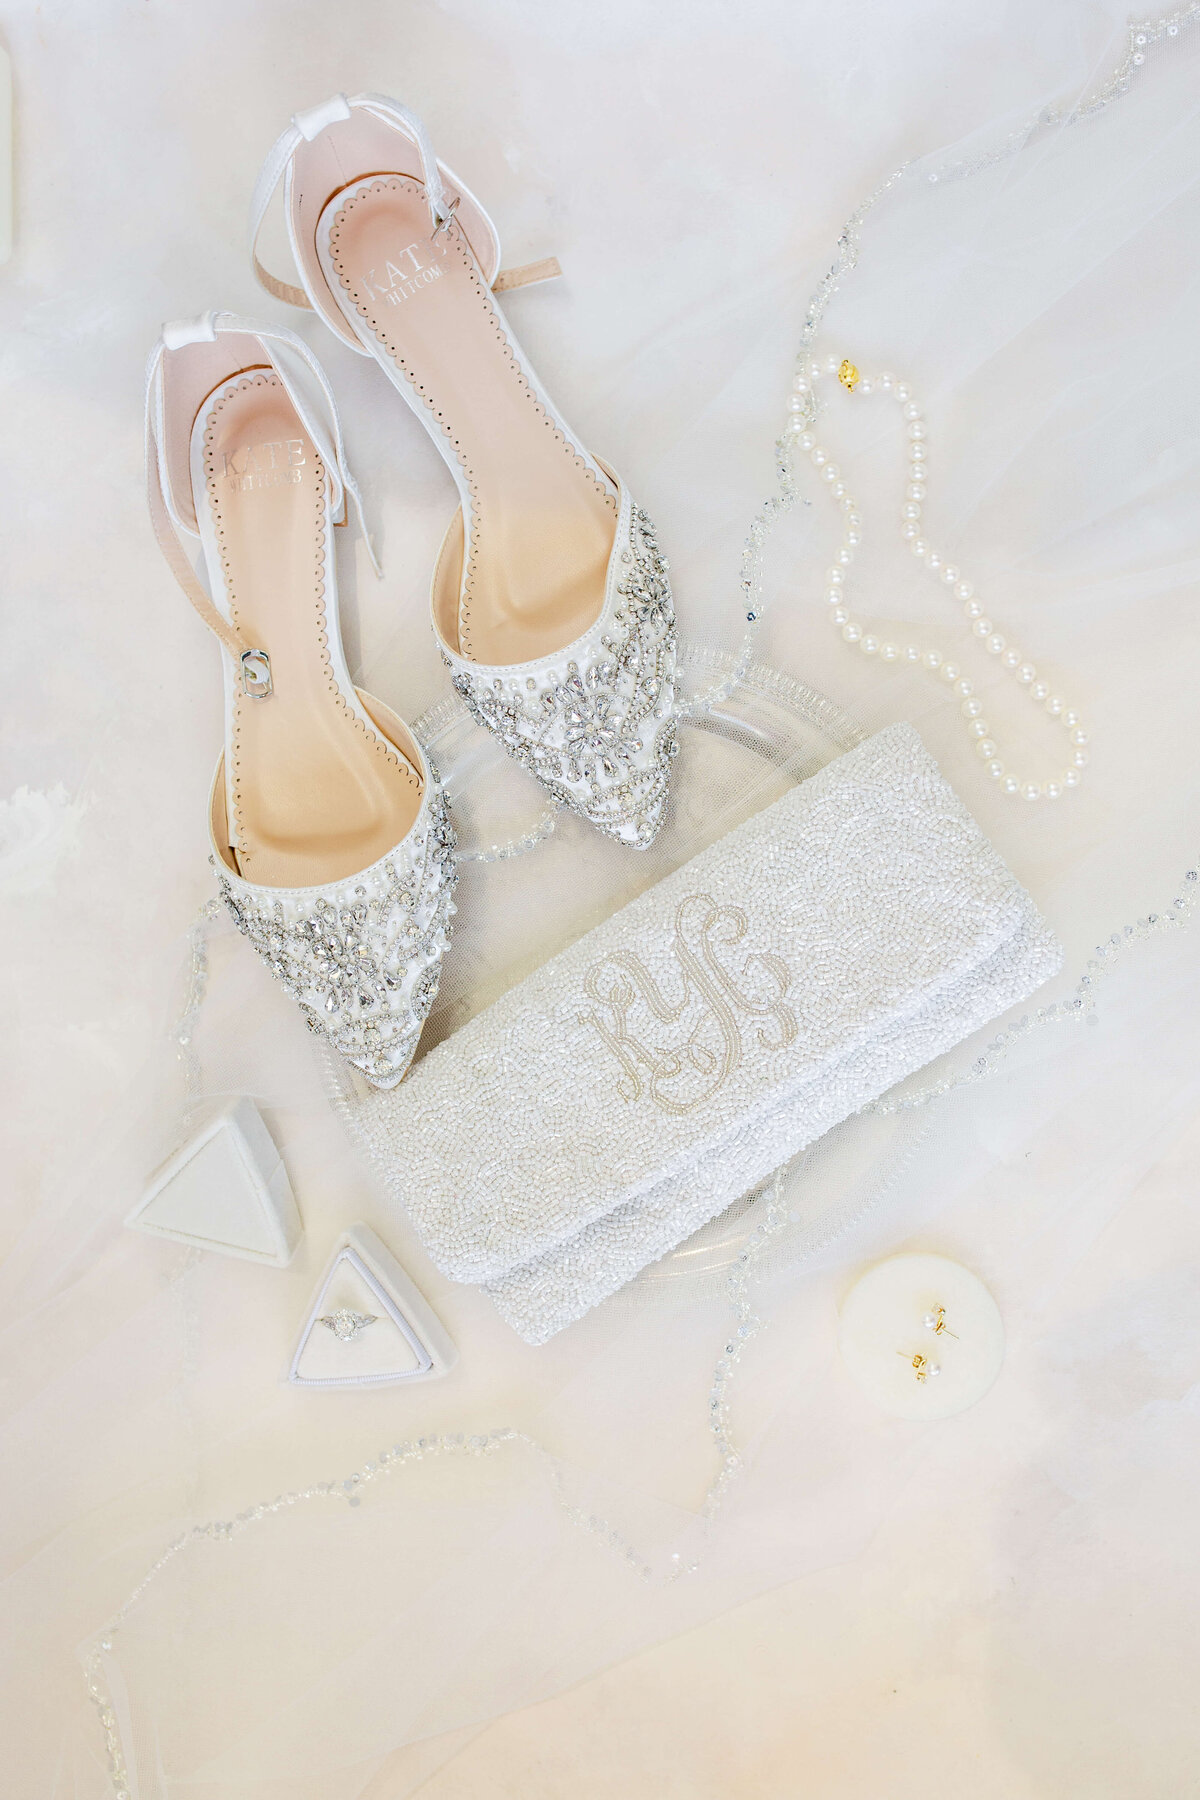 Styled-Wedding-Details-Bethany-Lane-Photography-2